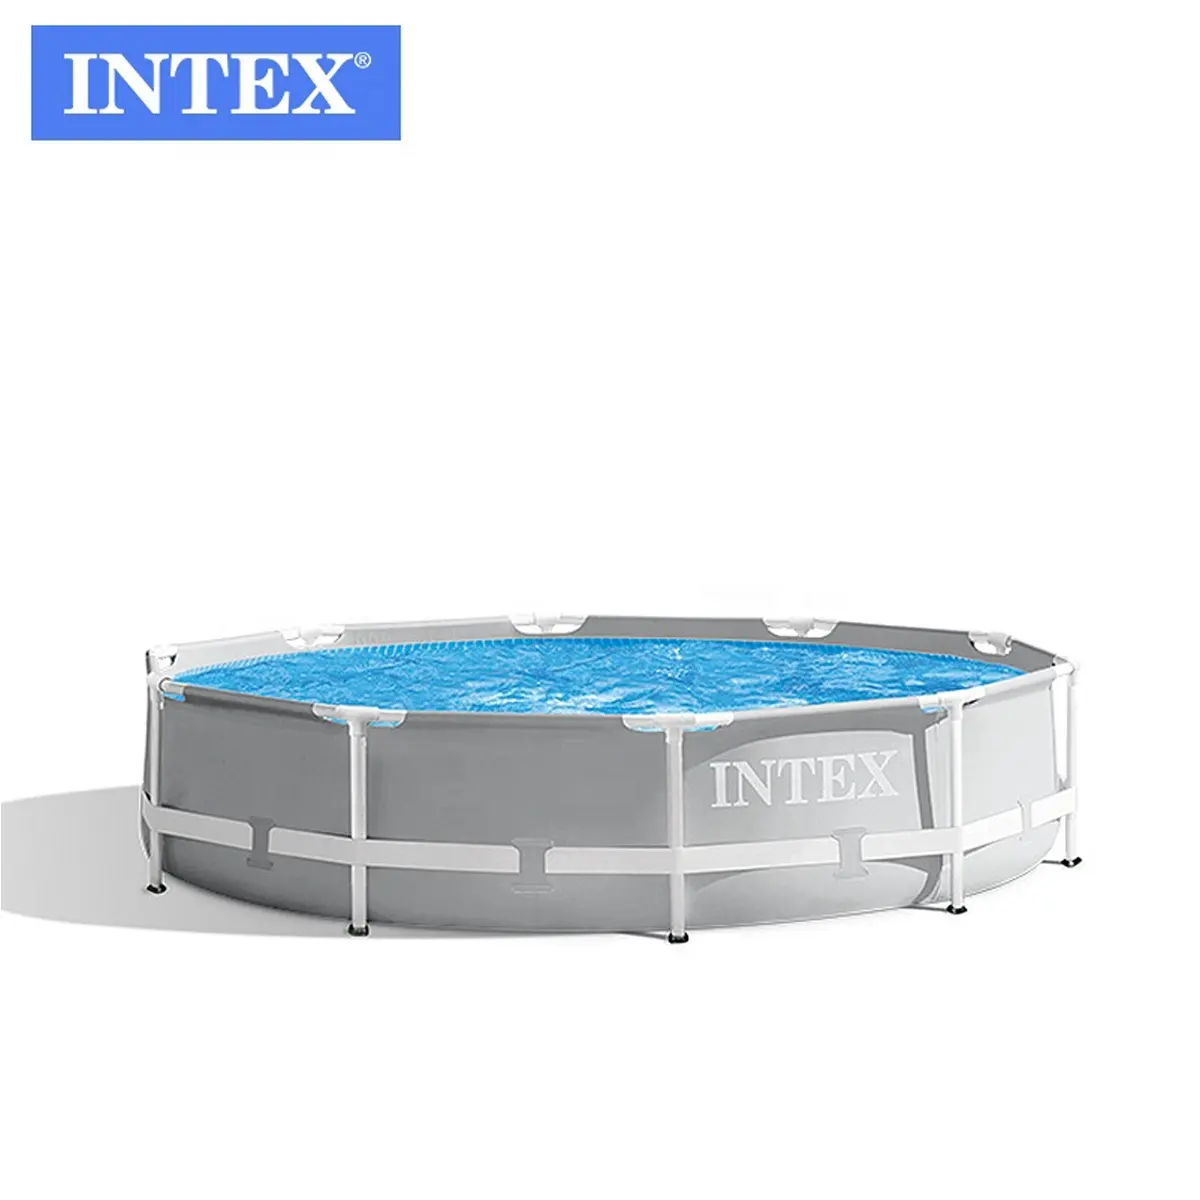 INTEX 26700 10FT X30INプリズムフレームプレミアムグレーラウンドパイプラックプールスイミングプール